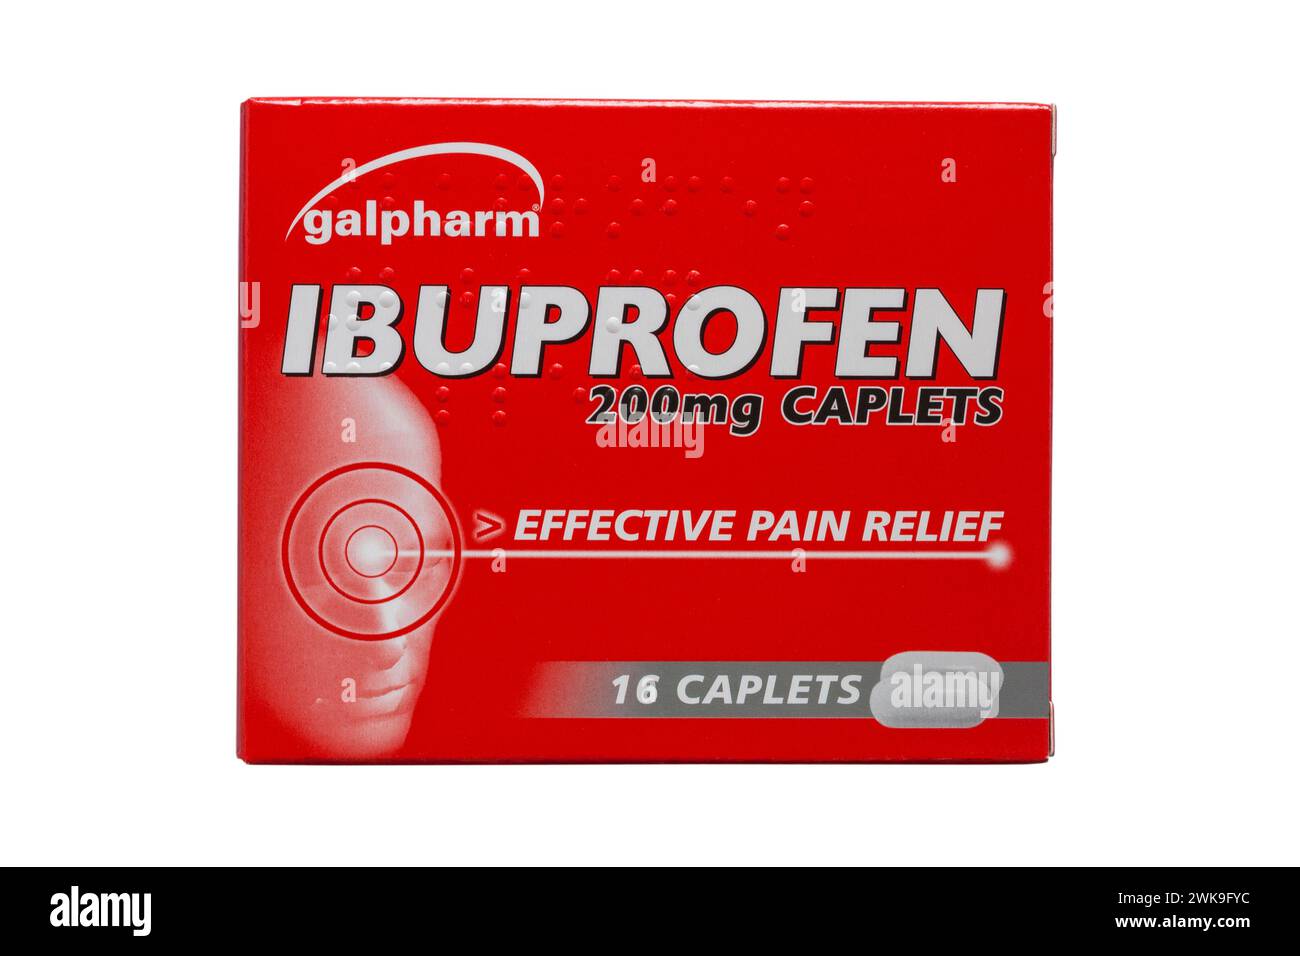 Galpharm ibuprofène 200mg caplets comprimés efficaces de soulagement de la douleur médicament isolé sur fond blanc Banque D'Images